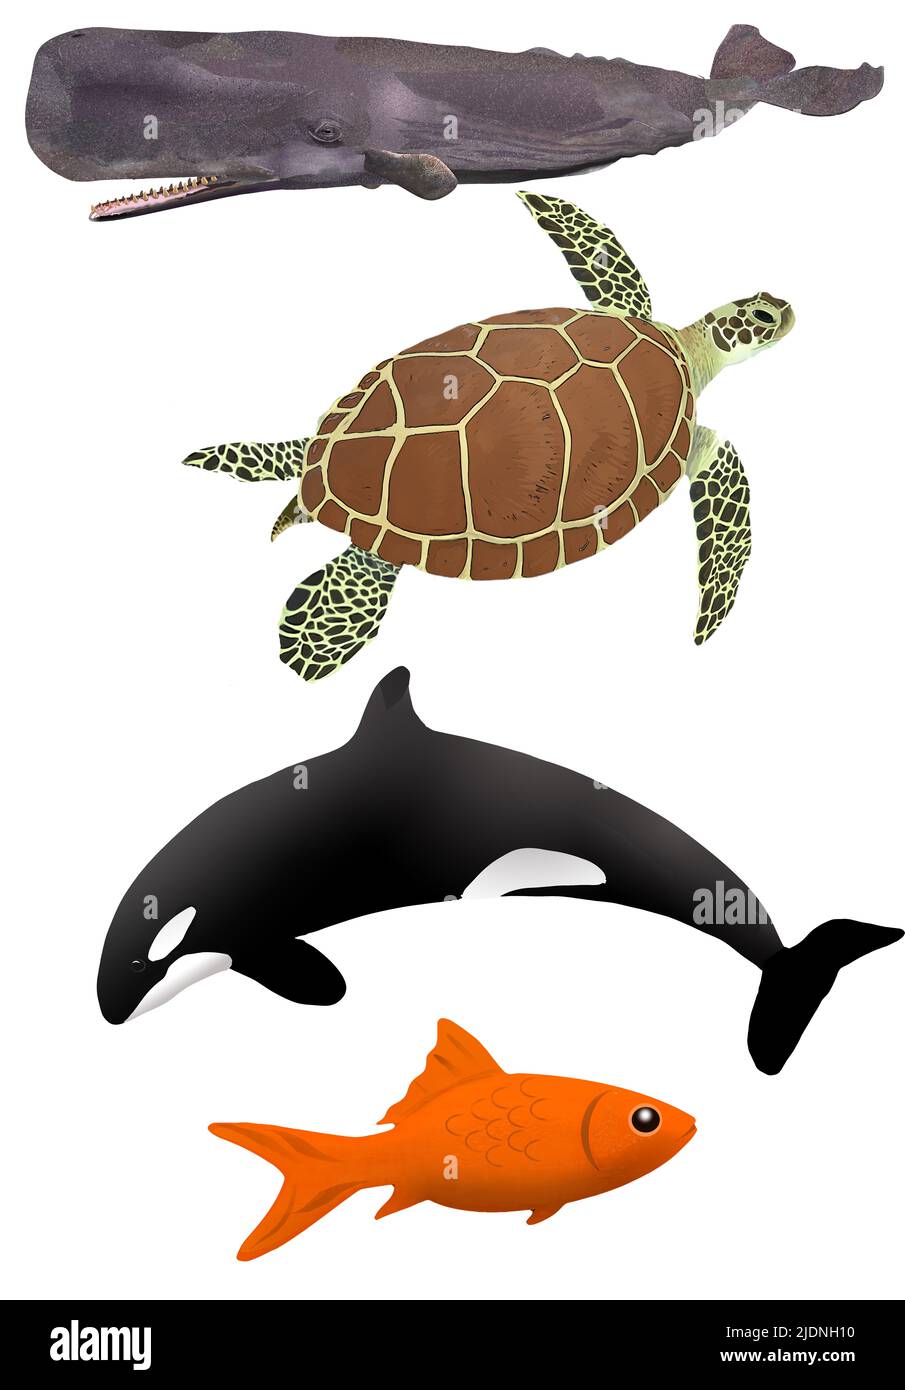 Un cachalote, una tortuga marina verde y una orca y un pez dorado son vistos como una ilustración de 3-d para ser usados como elementos gráficos. Foto de stock